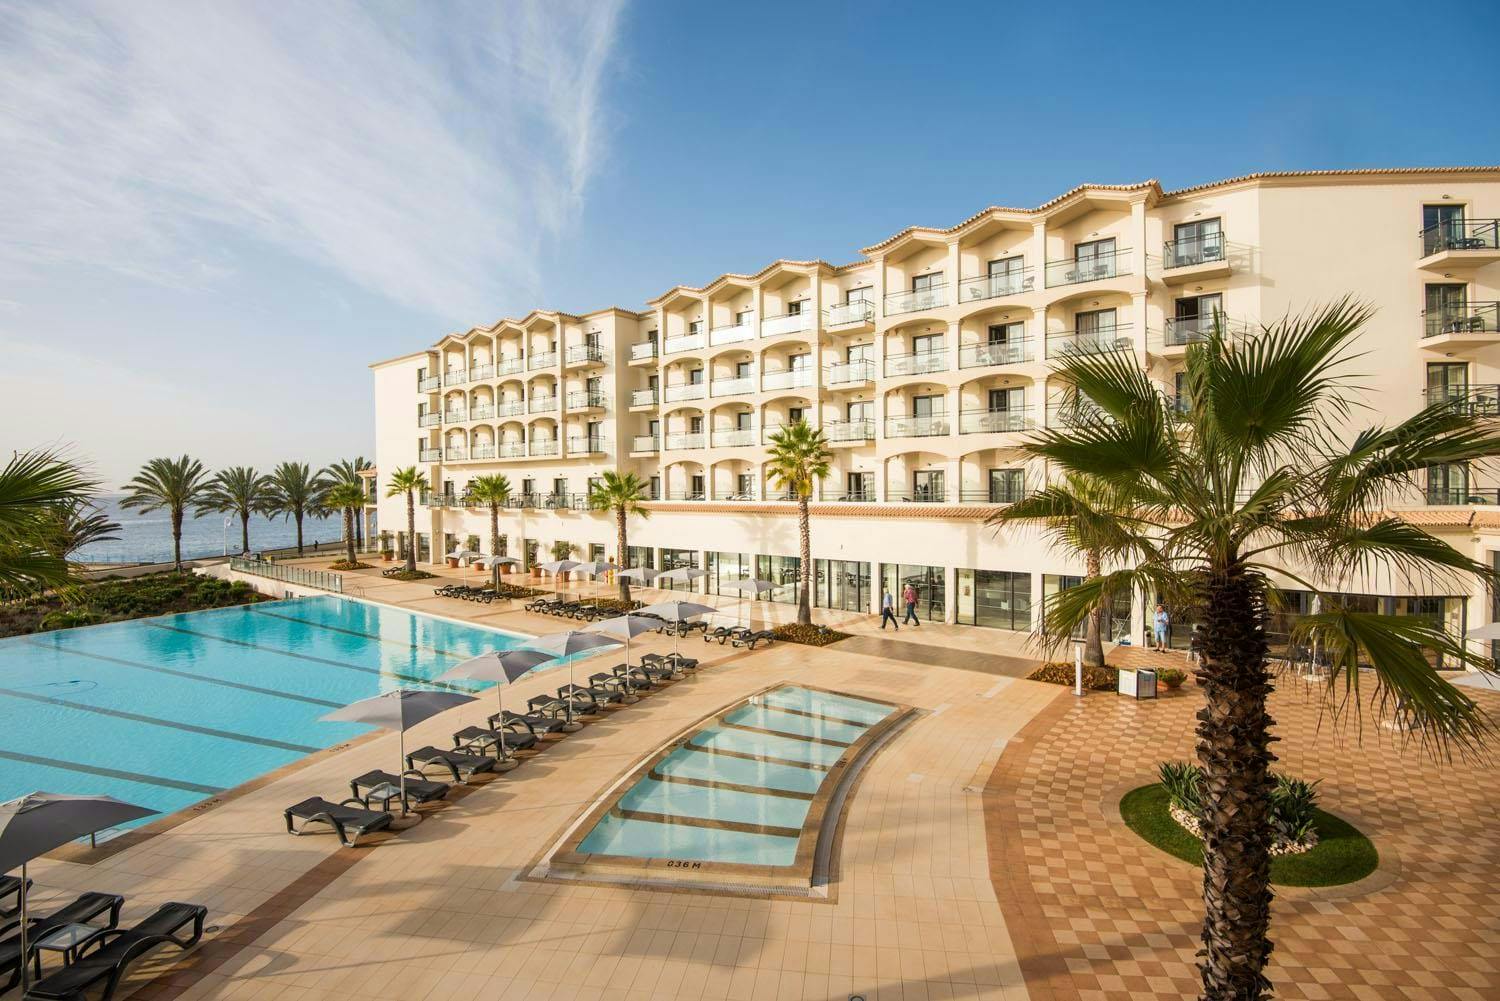 Atostogaukite Vila Galé Santa Cruz 4* viešbutyje, kuriame pakerės atsiveriančios panoramos ir vandenynas